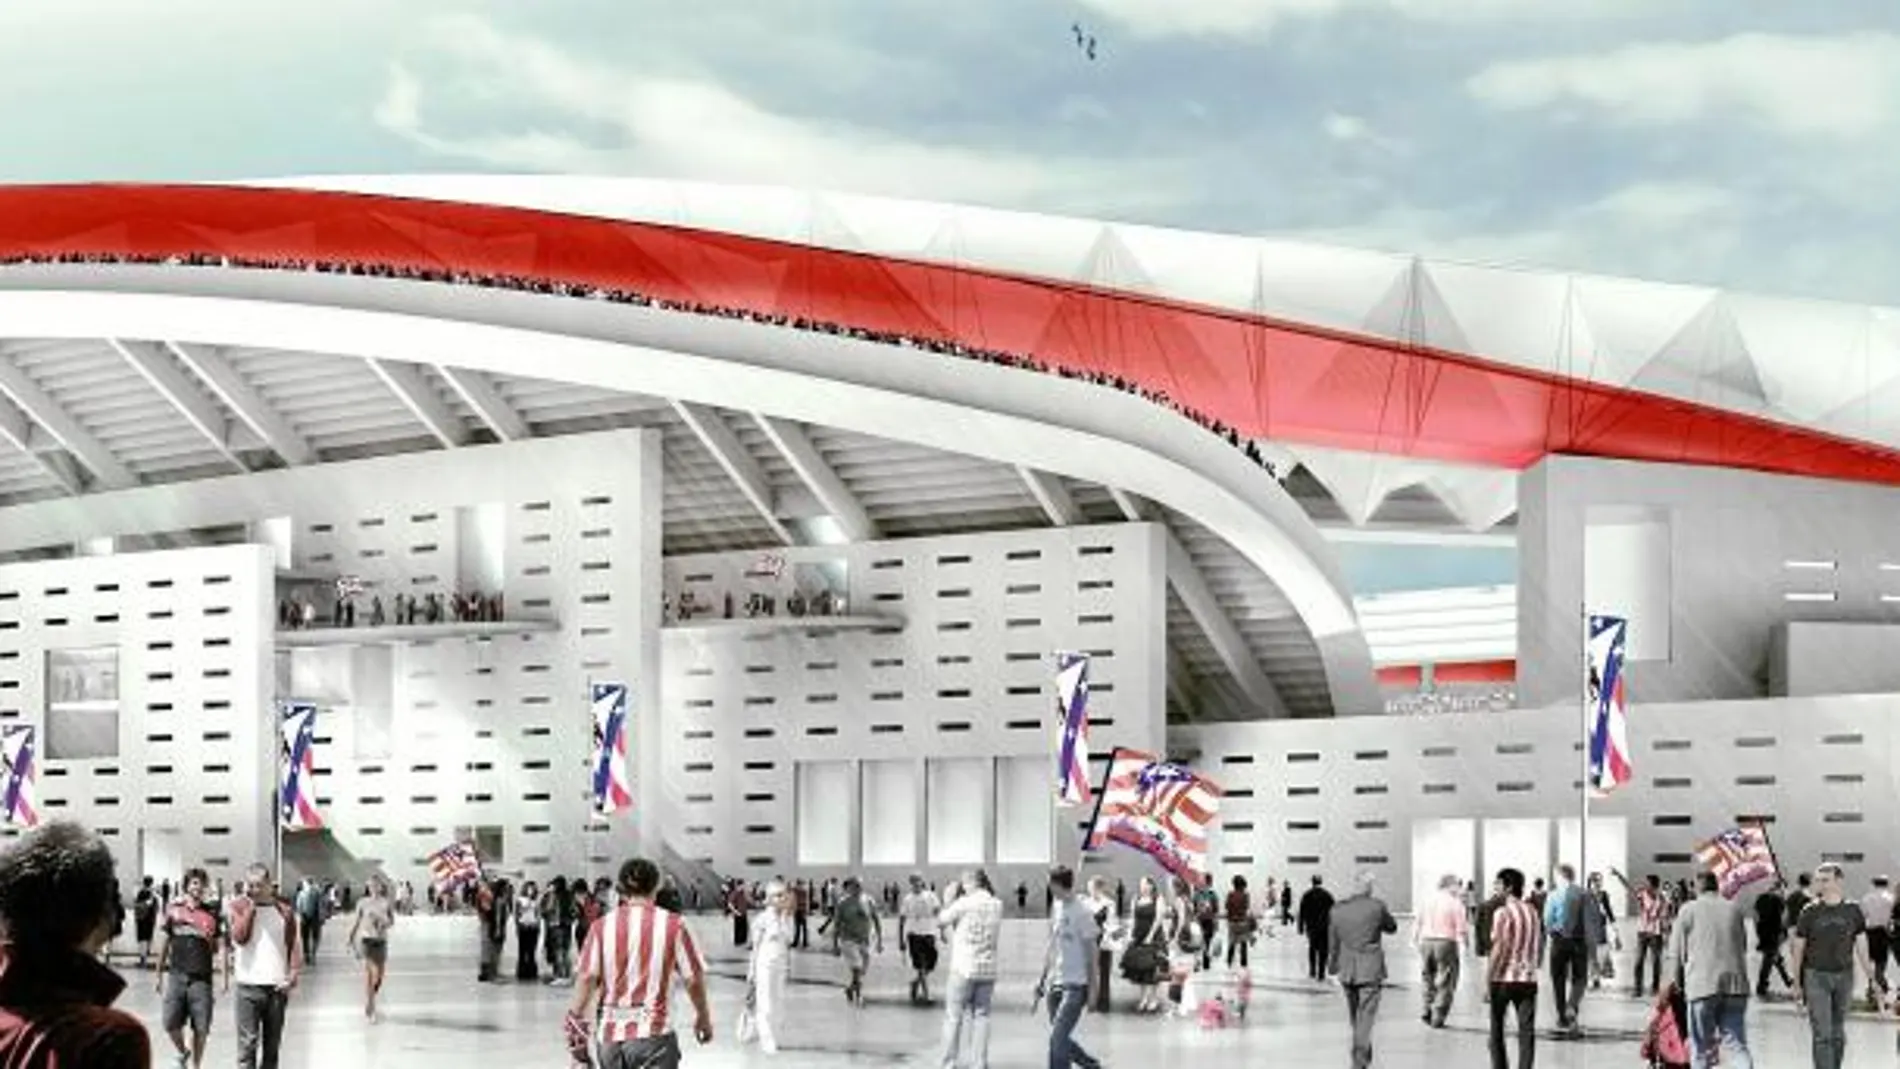 La Operación Mahou-Calderón incluye el traslado del Atlético de Madrid a un remodelado estadio de La Peineta